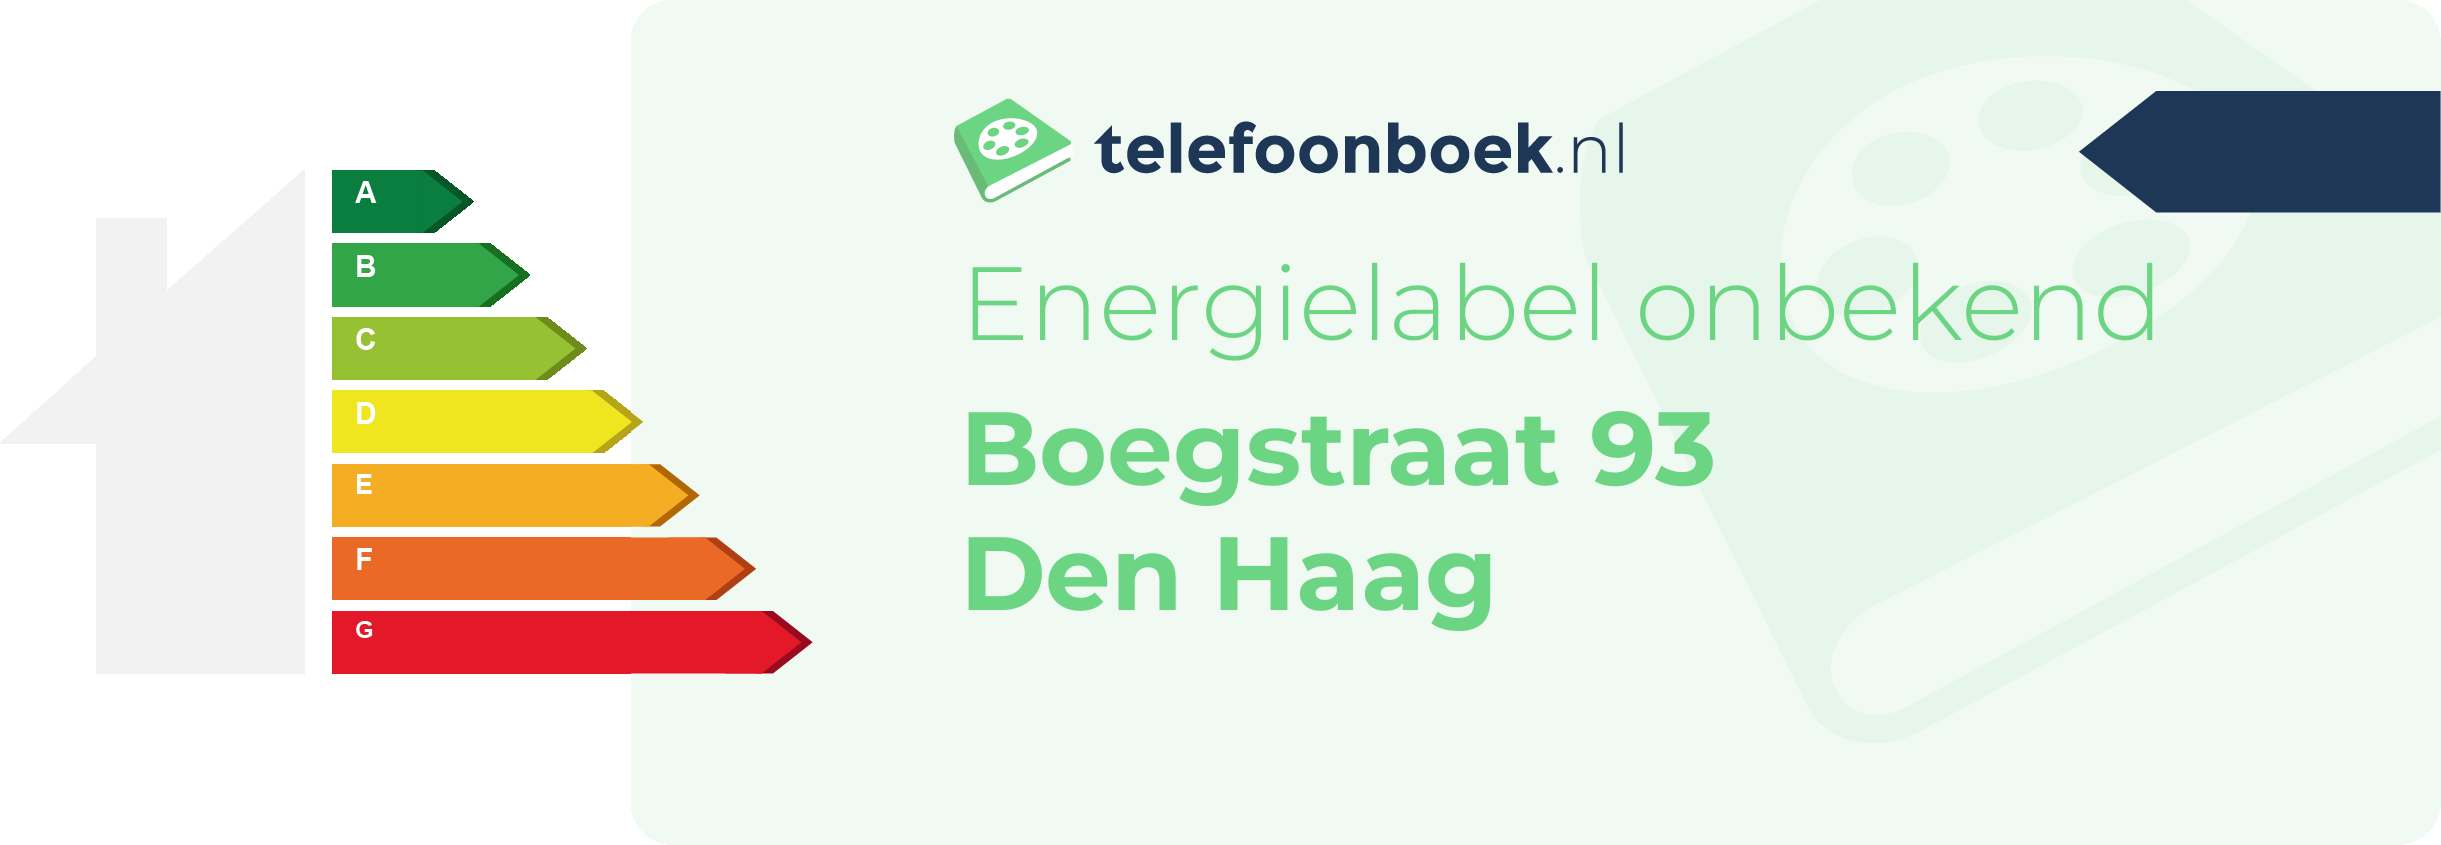 Energielabel Boegstraat 93 Den Haag